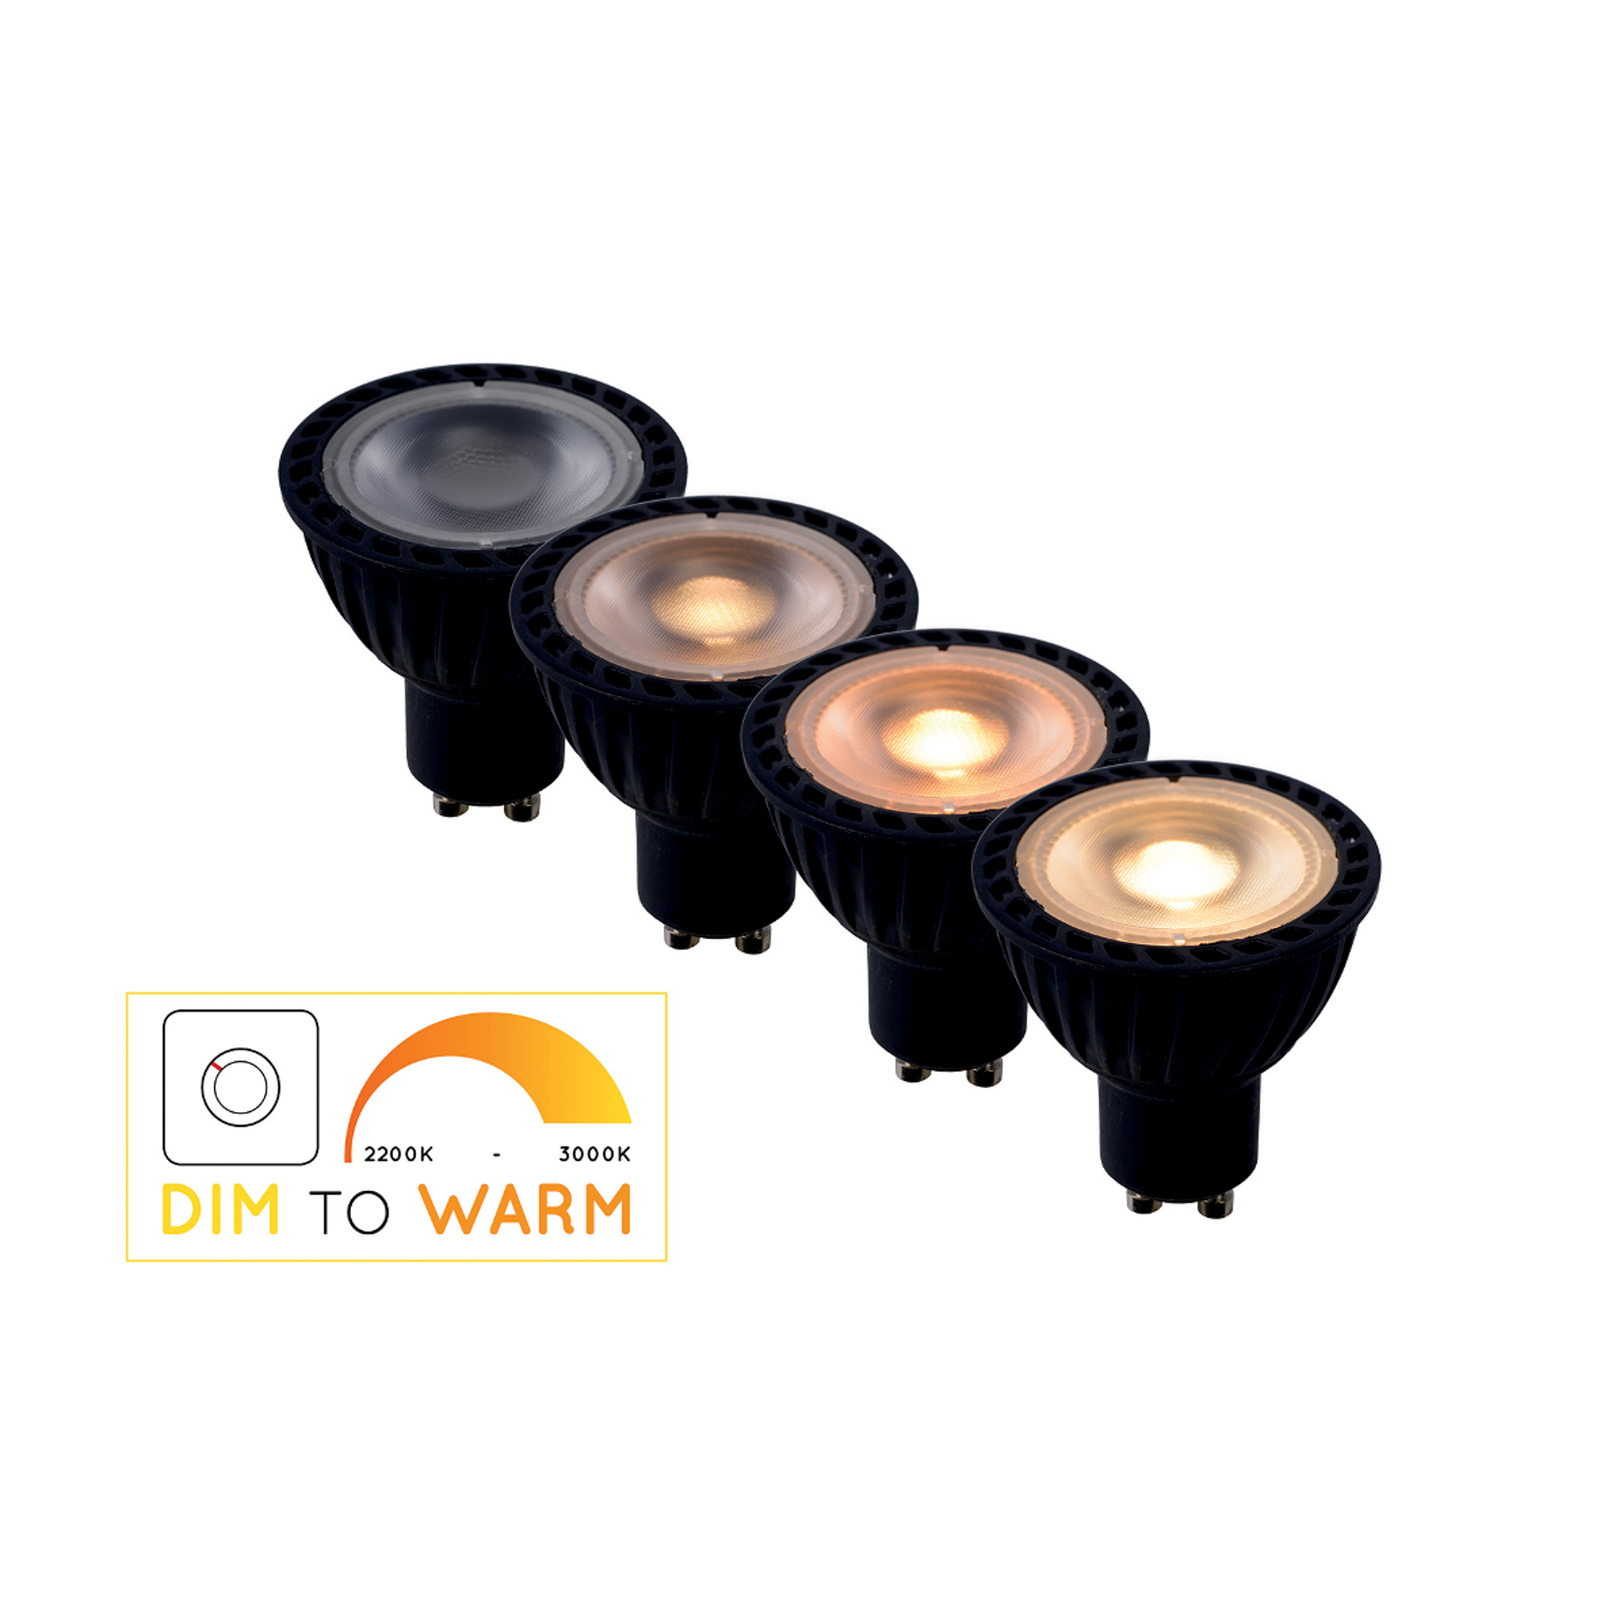 LED-reflektor GU10 5W dim to warm, sort